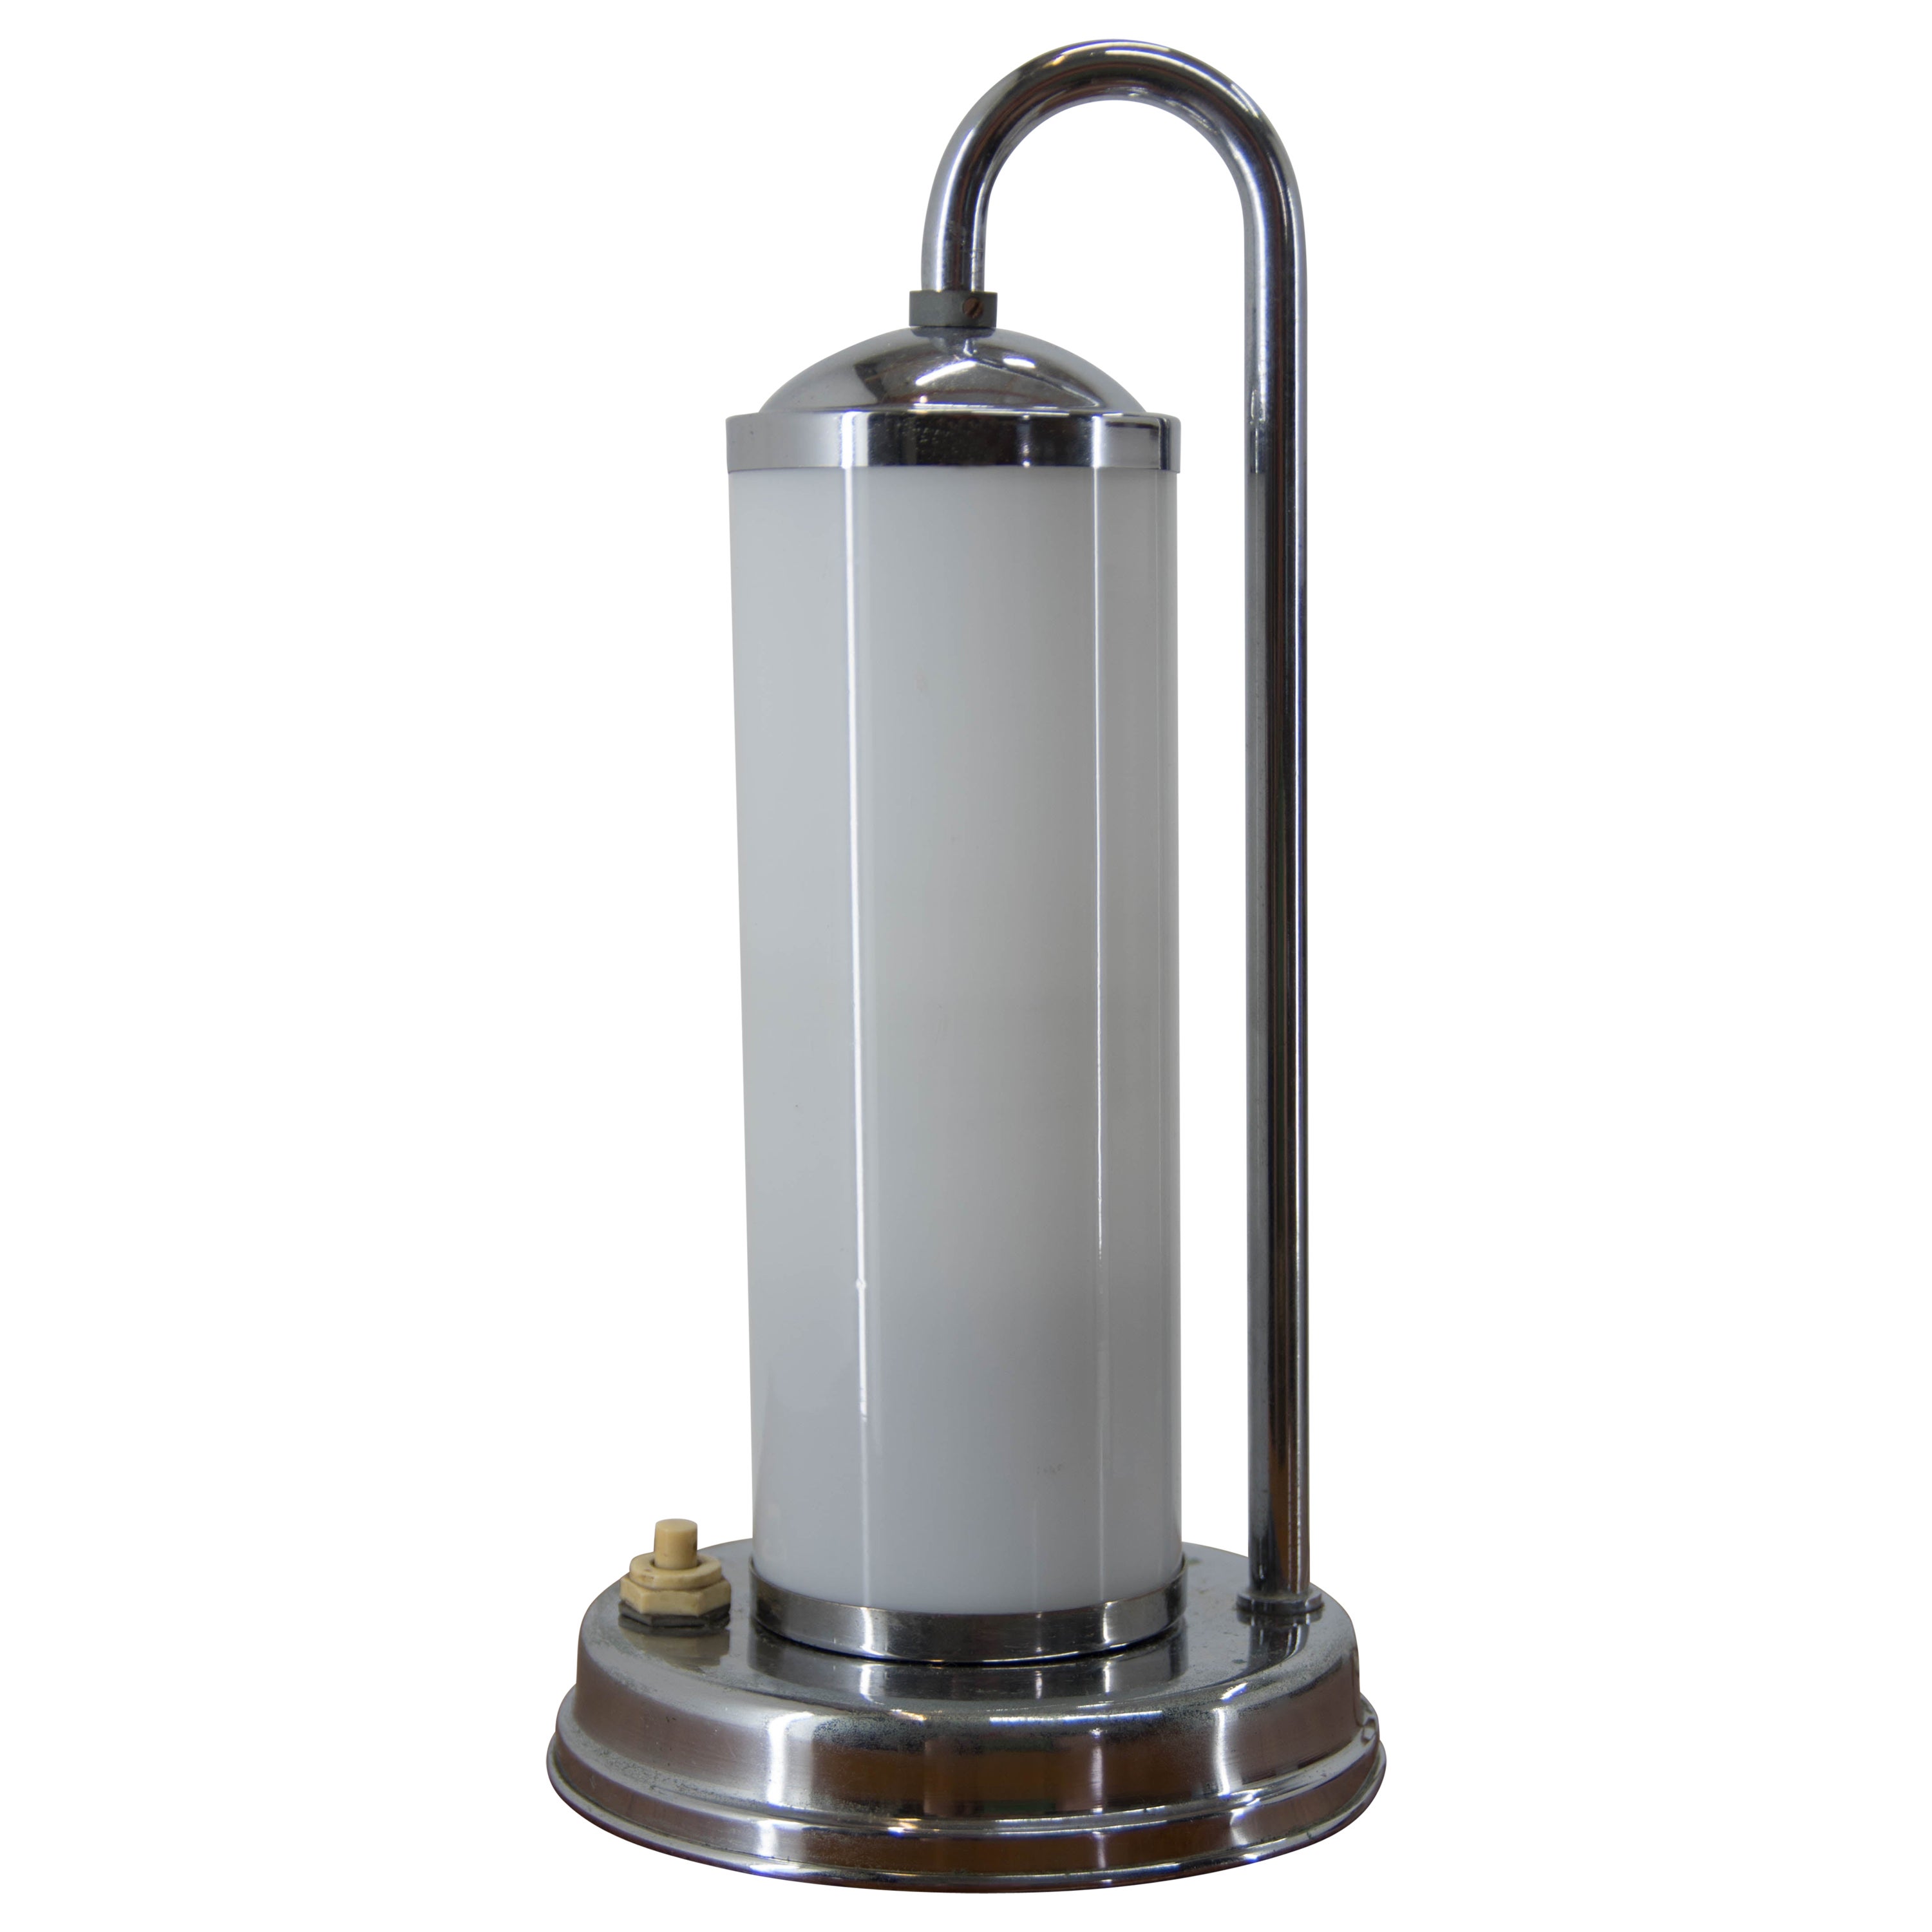 Bauhaus Table Lamp, 1930s